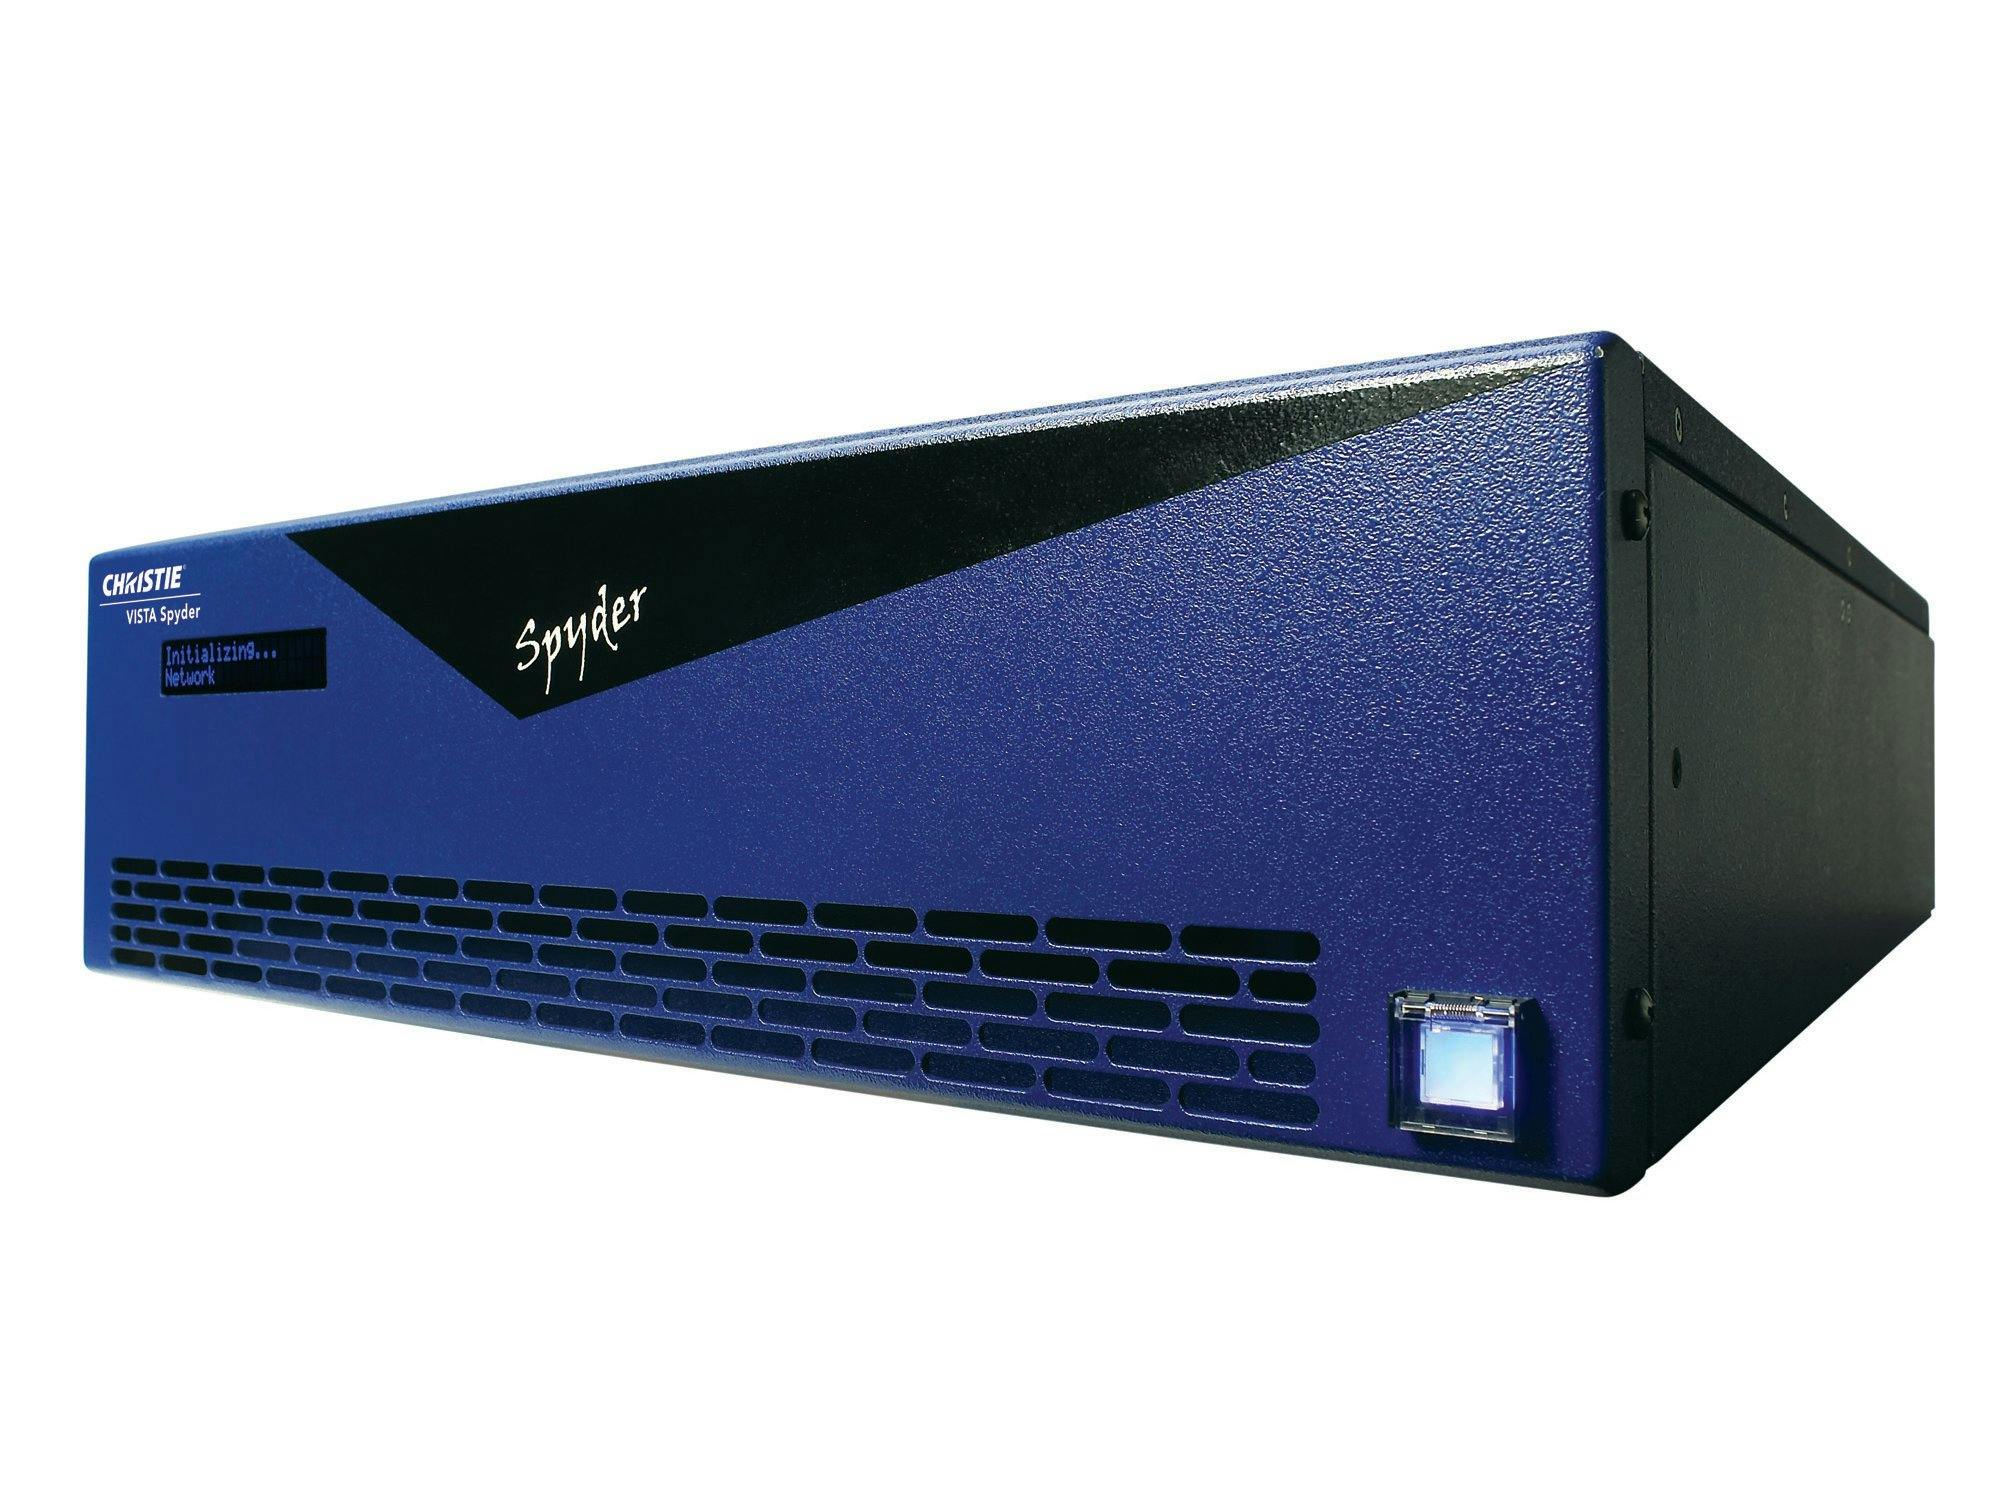 Christie Spyder video processor | 120-052108-XX | 120-064101-XX